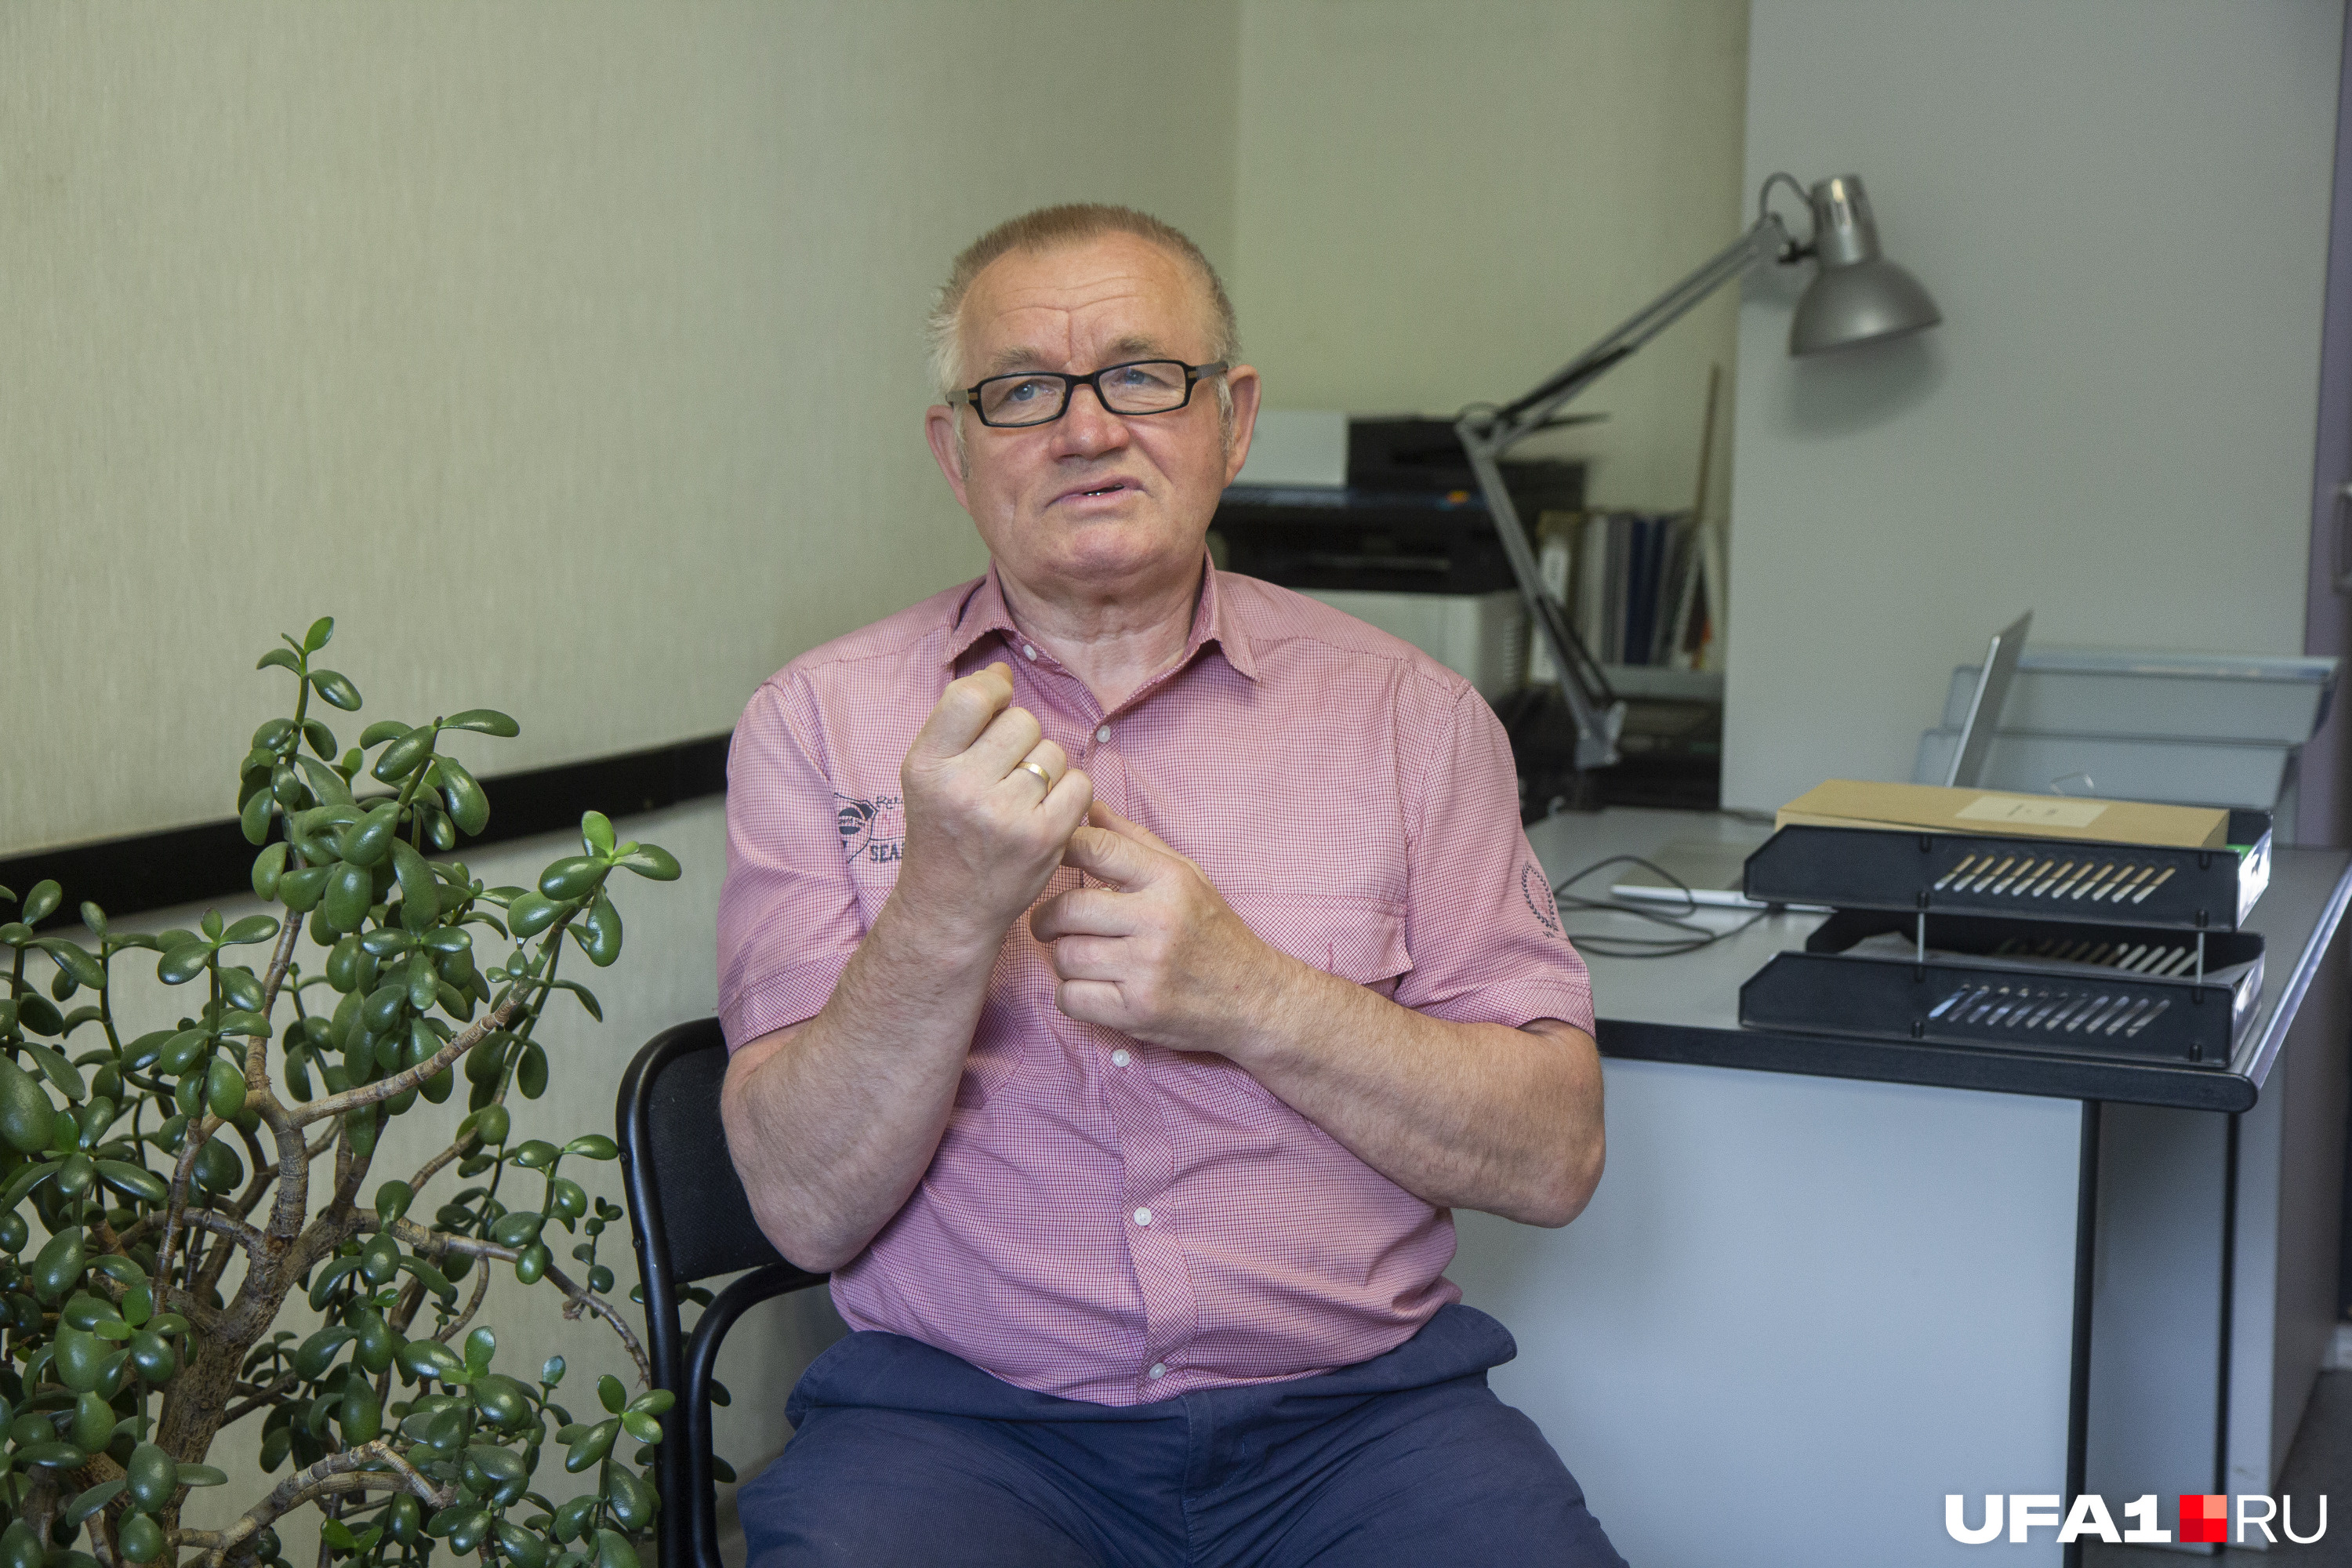 Александру — 66 лет, но он мечтает работать и быть полезным людям 